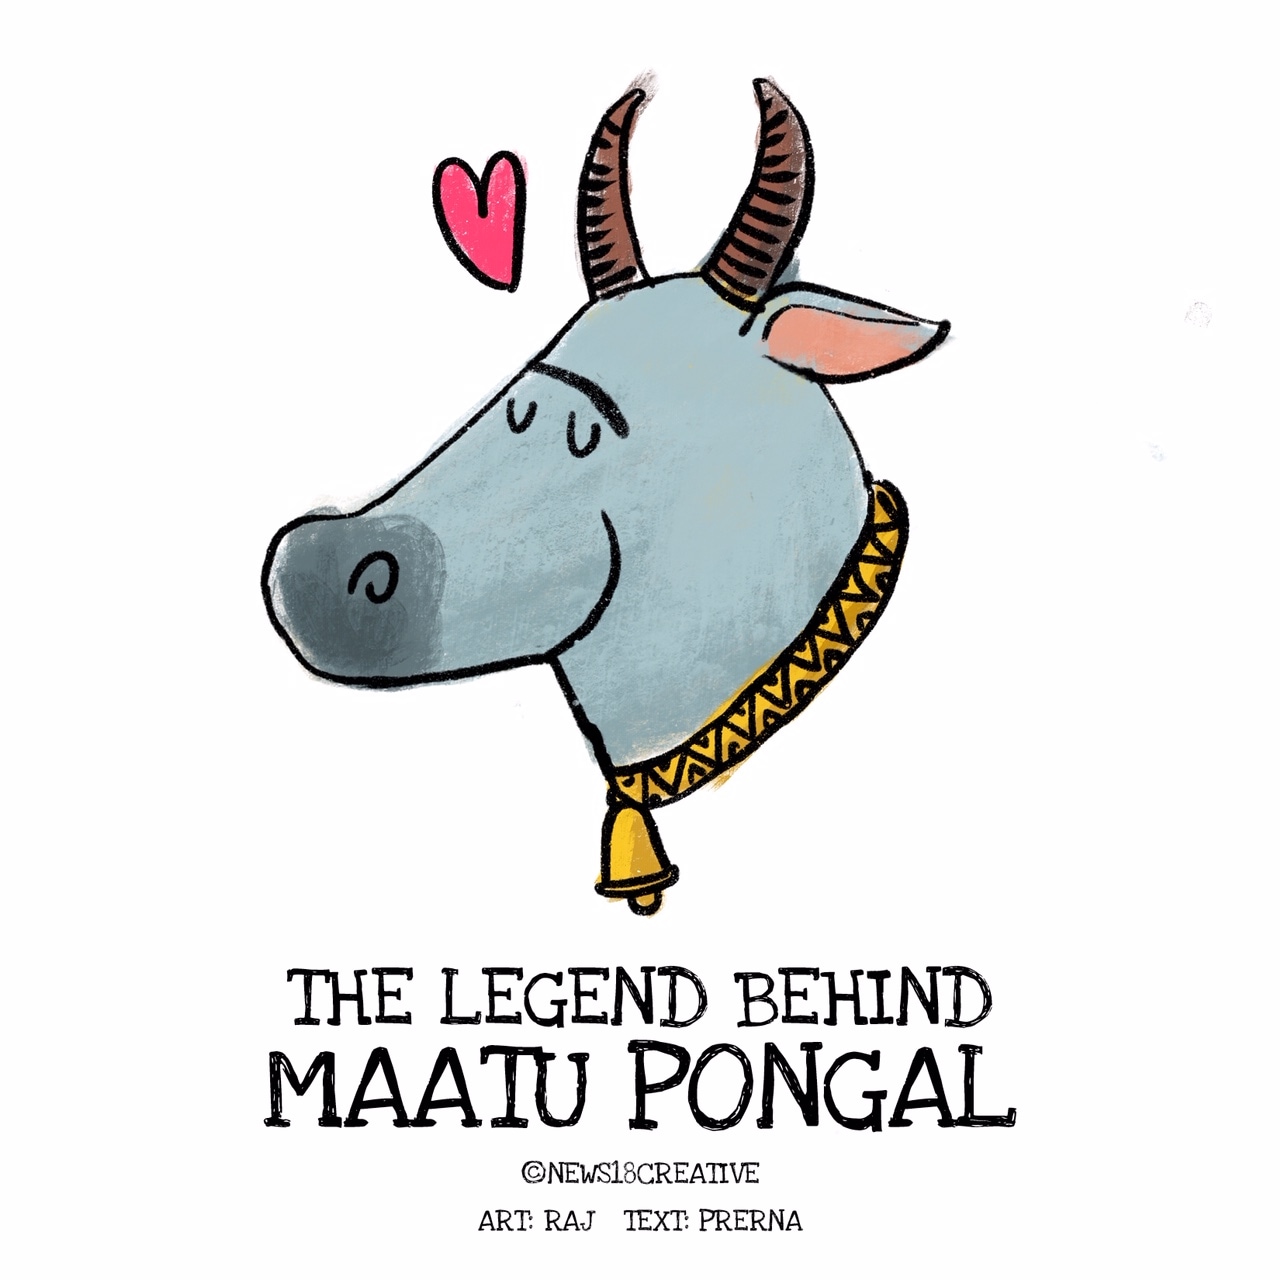 Shambhavi Gupta on LinkedIn: #festivals #mattupongal